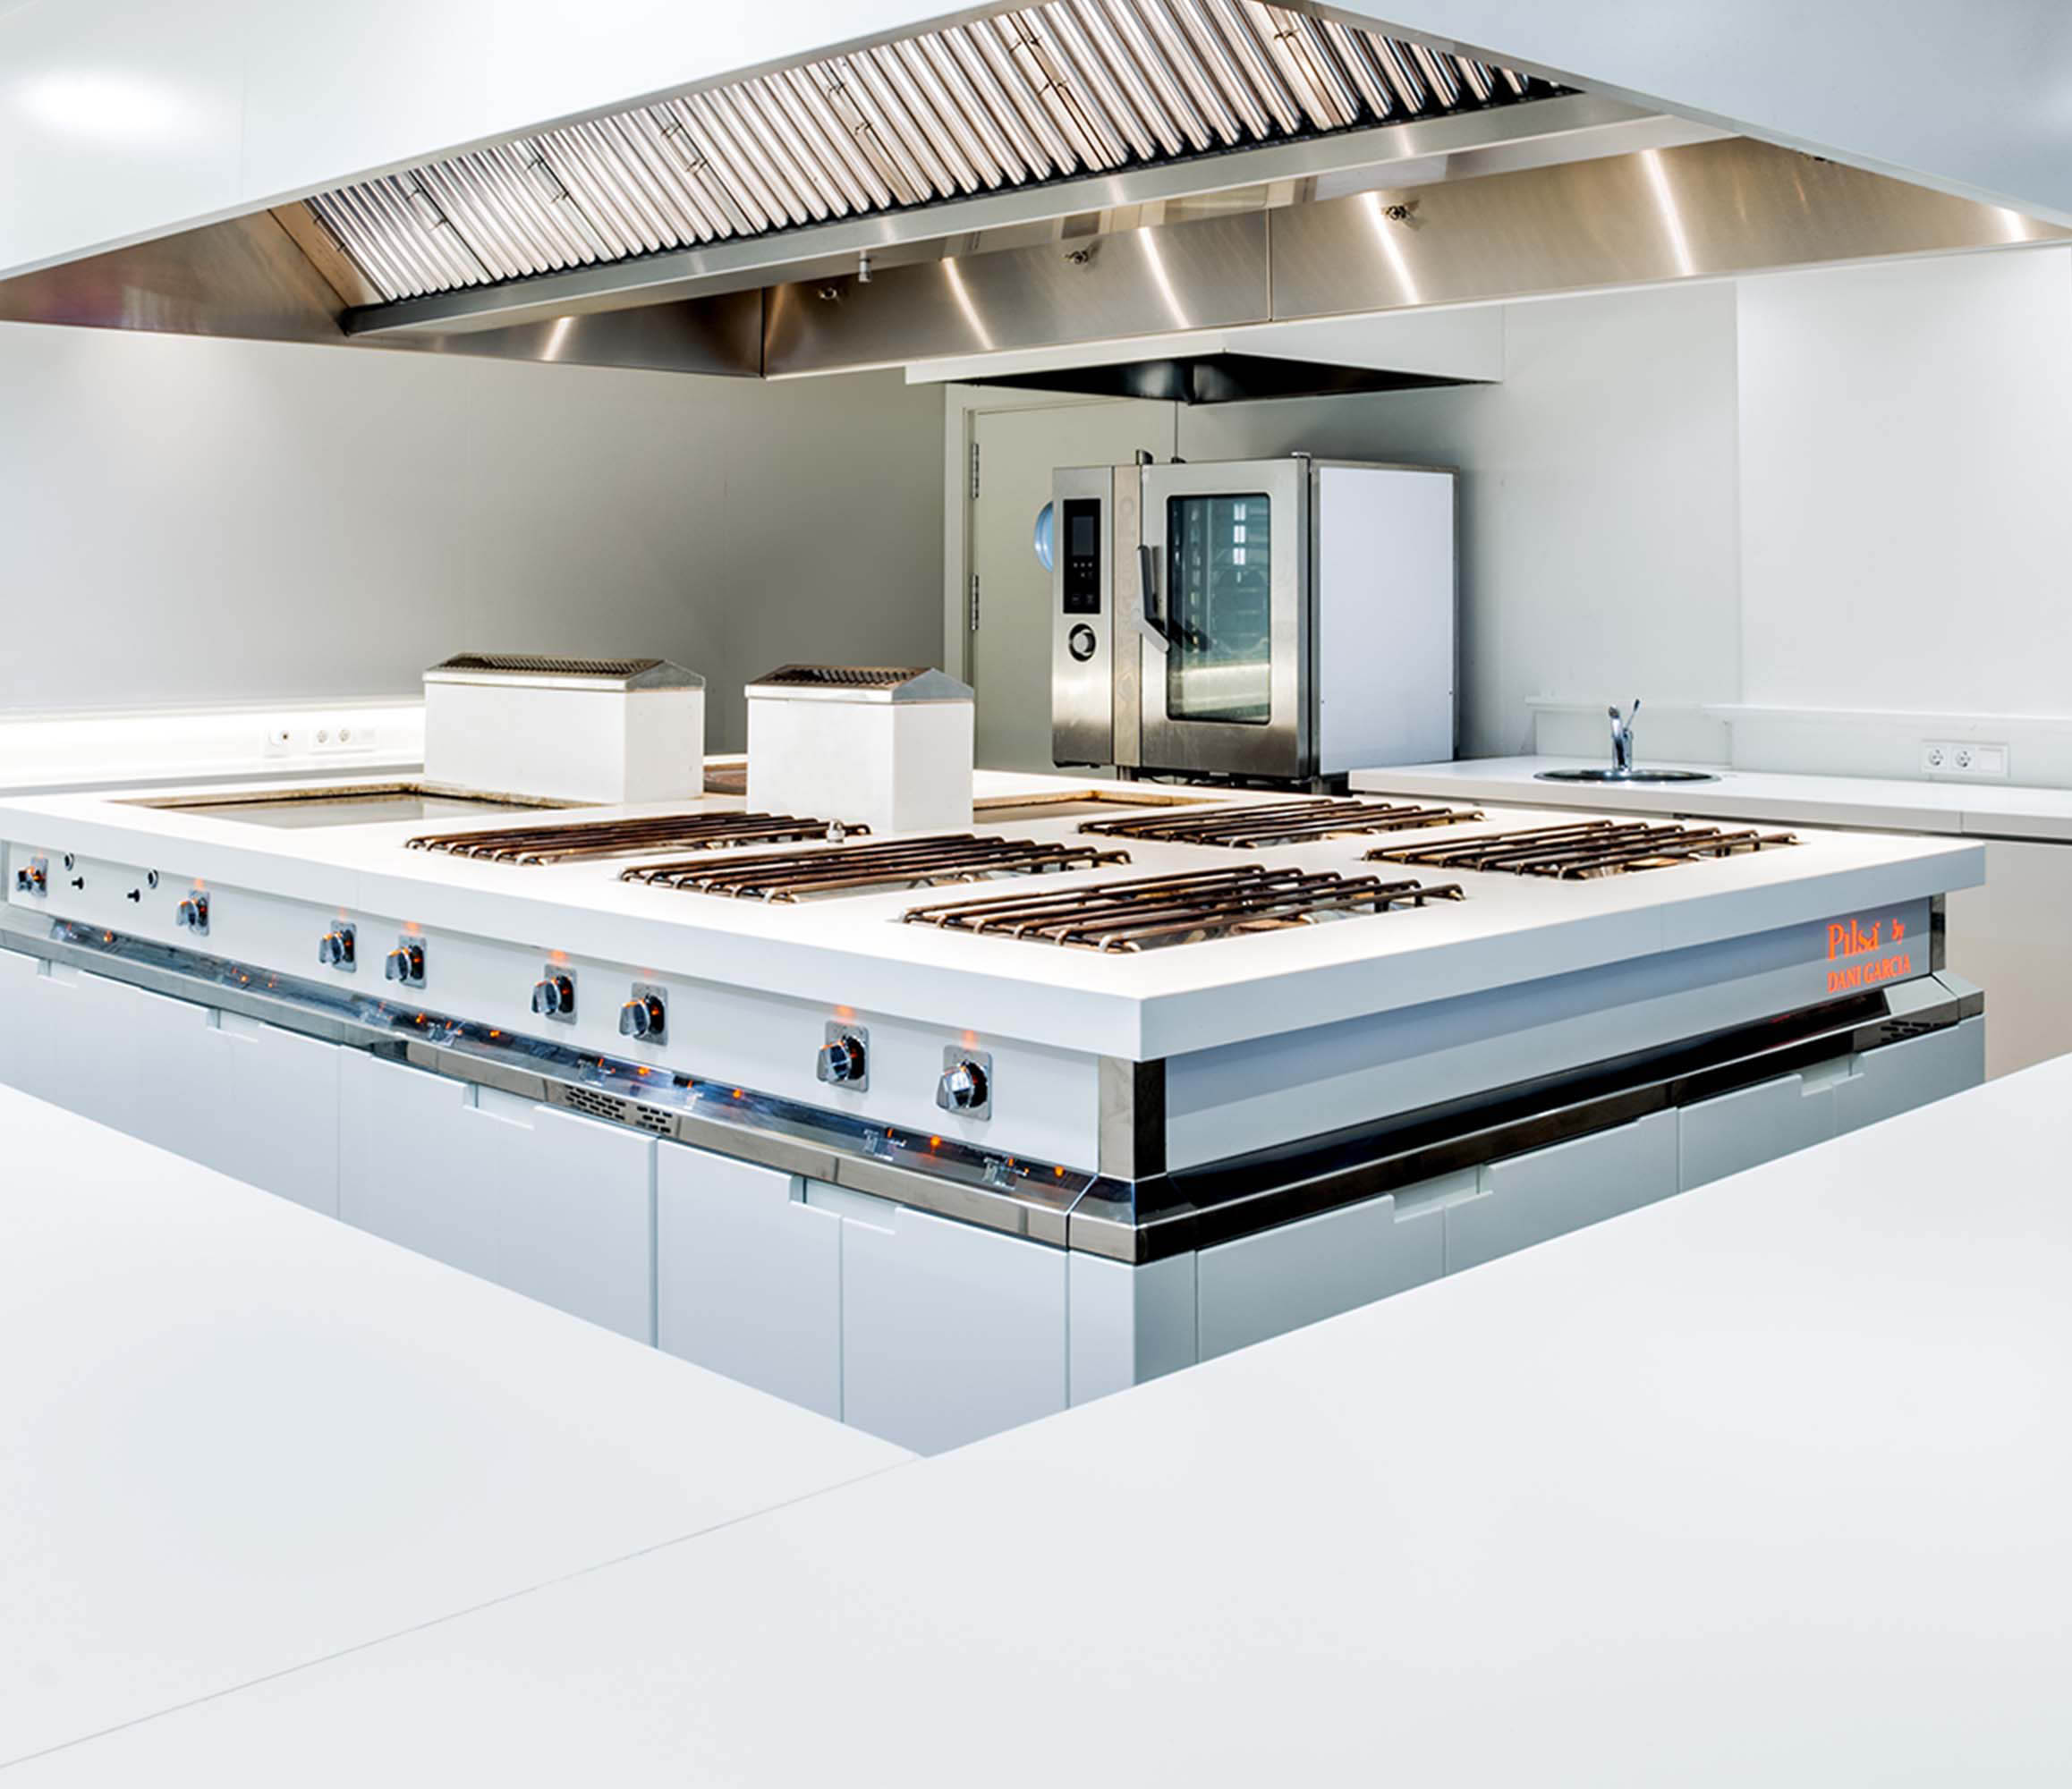 Image of Home 1158x1000 3 Professional KitchenArchitectura in Home Cosentino - Cosentino